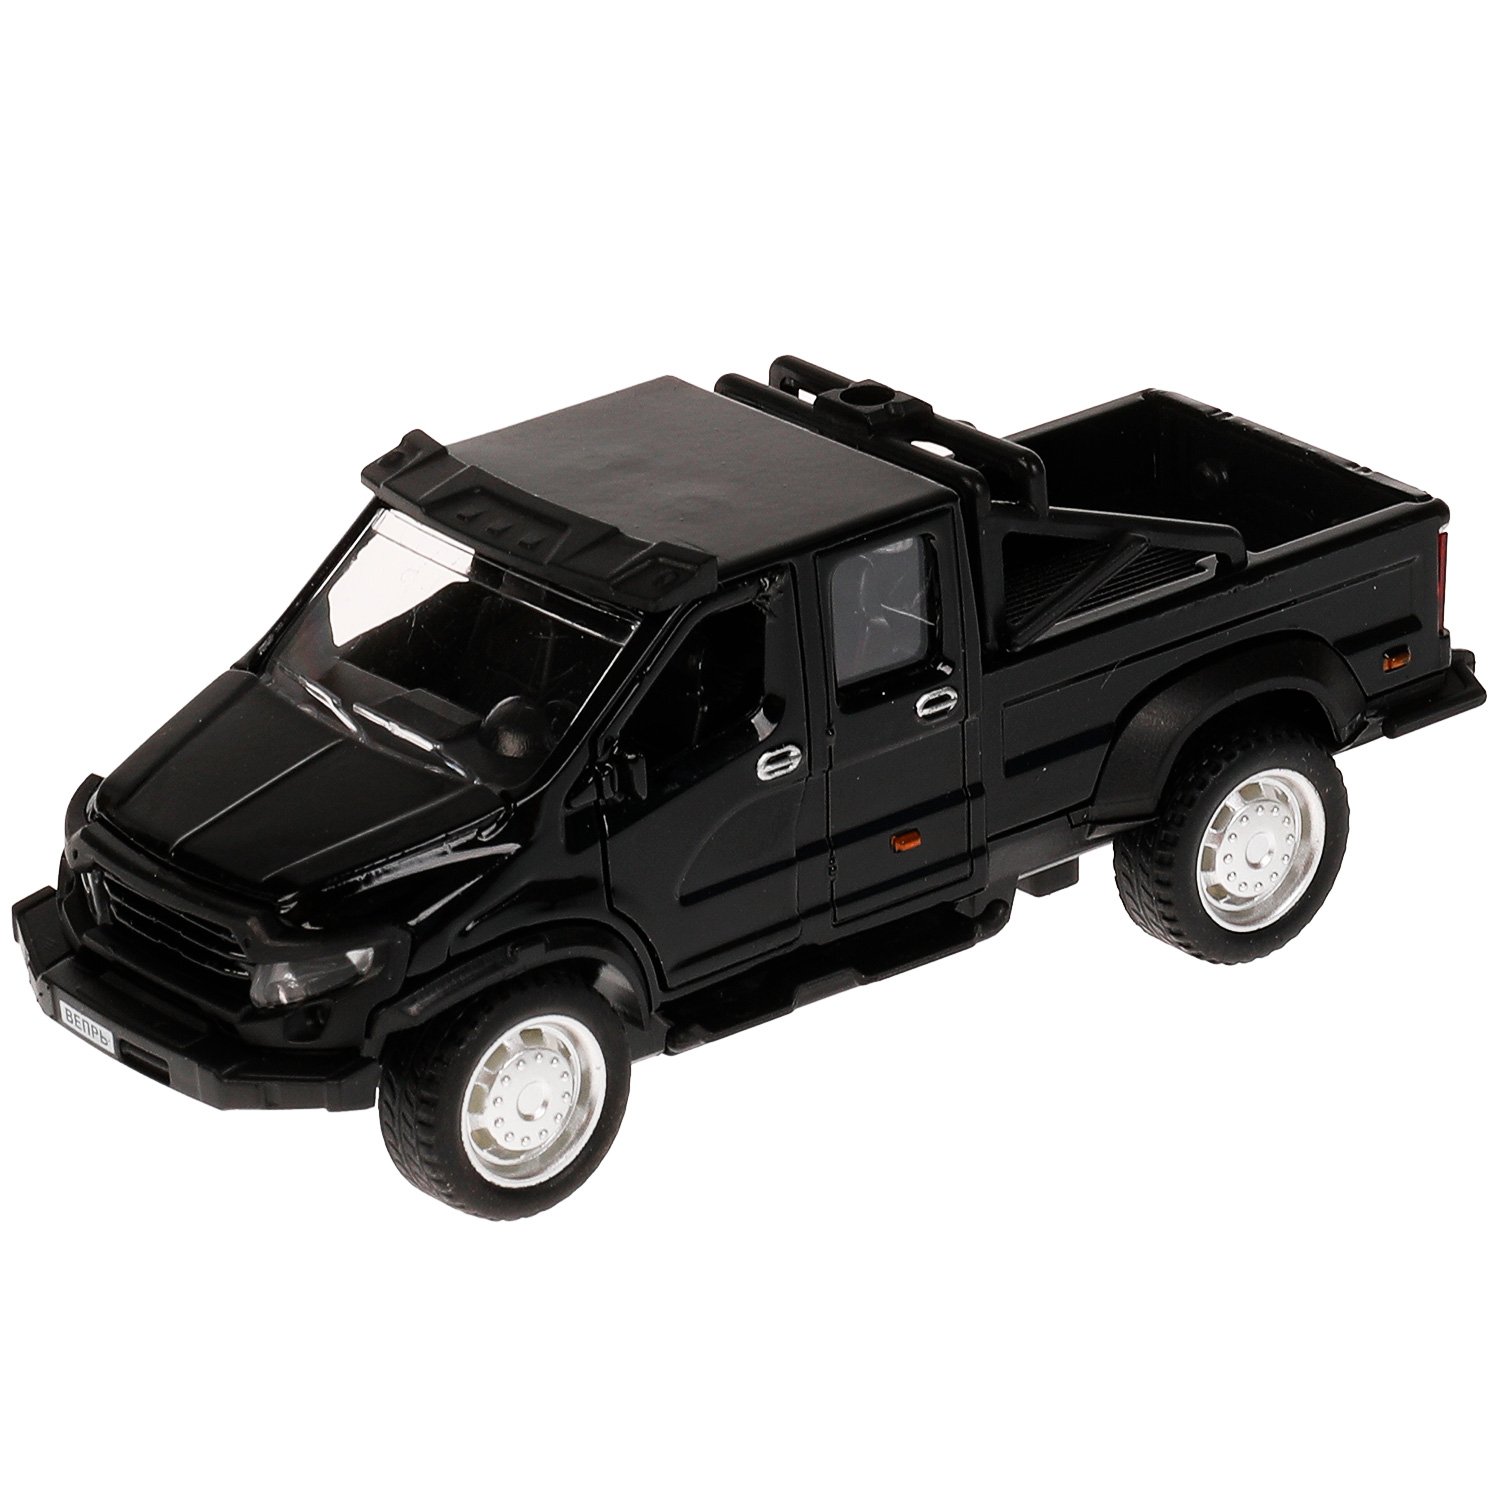 Машина металл ГАЗ Вепрь, 12,5 см, (откр двери, черн,)  инерц, в коробке машина мет 1 38 bmw z4 gt3 откр двери 11см черн матовый